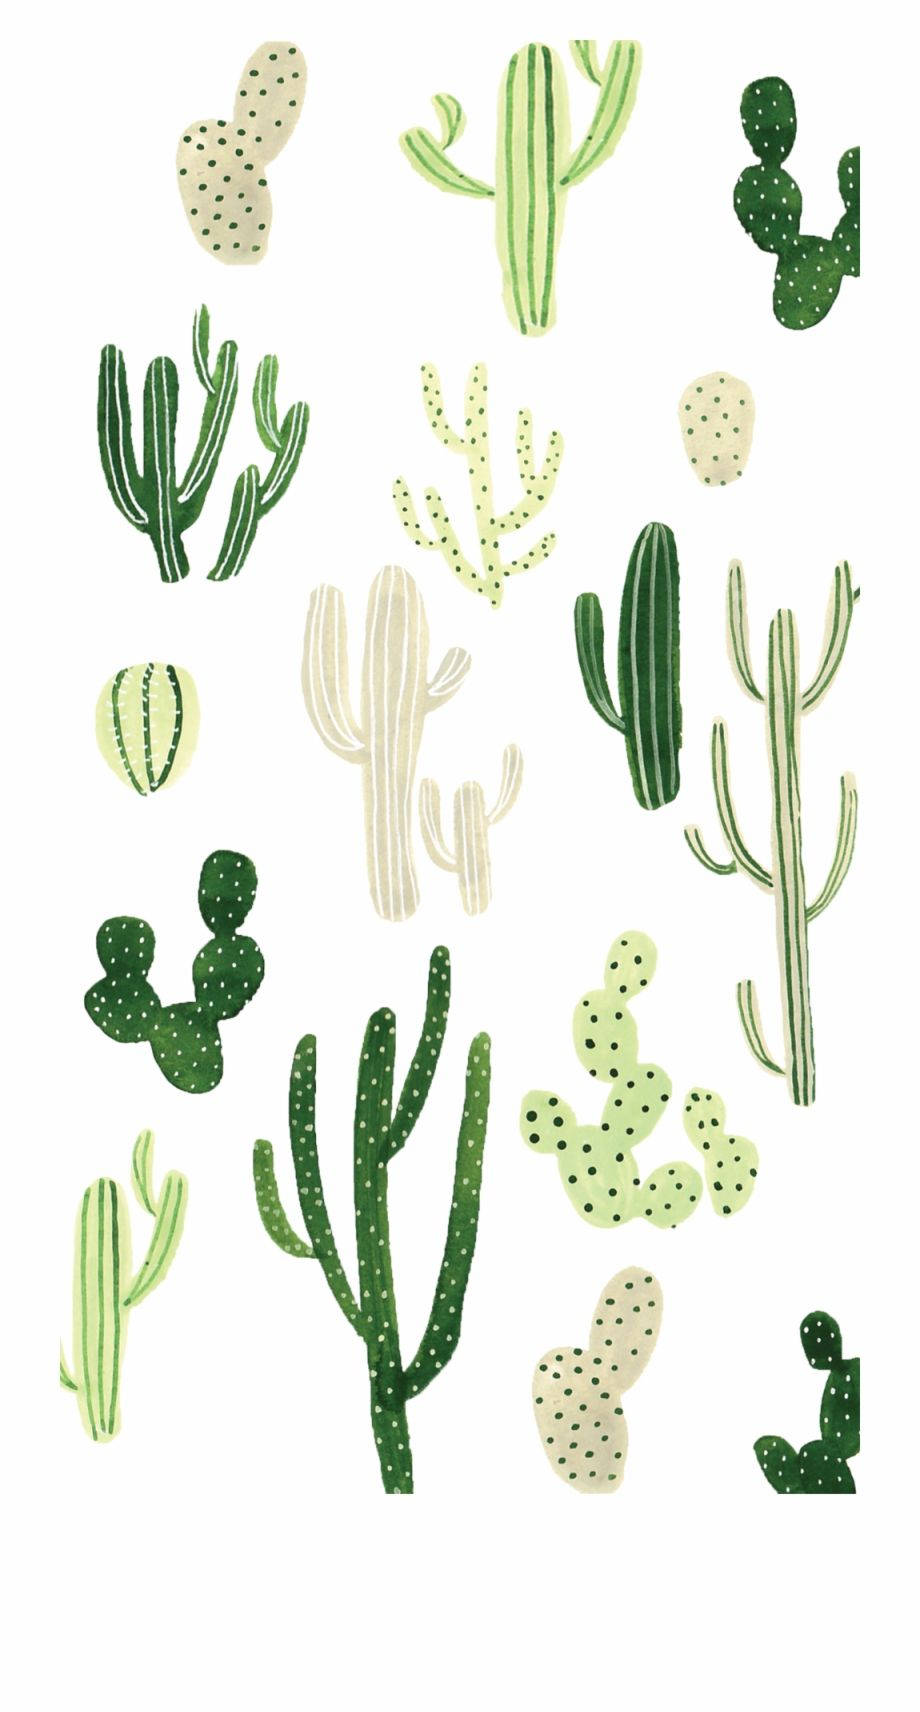 Cactus Print - Cactus Print Wallpaper